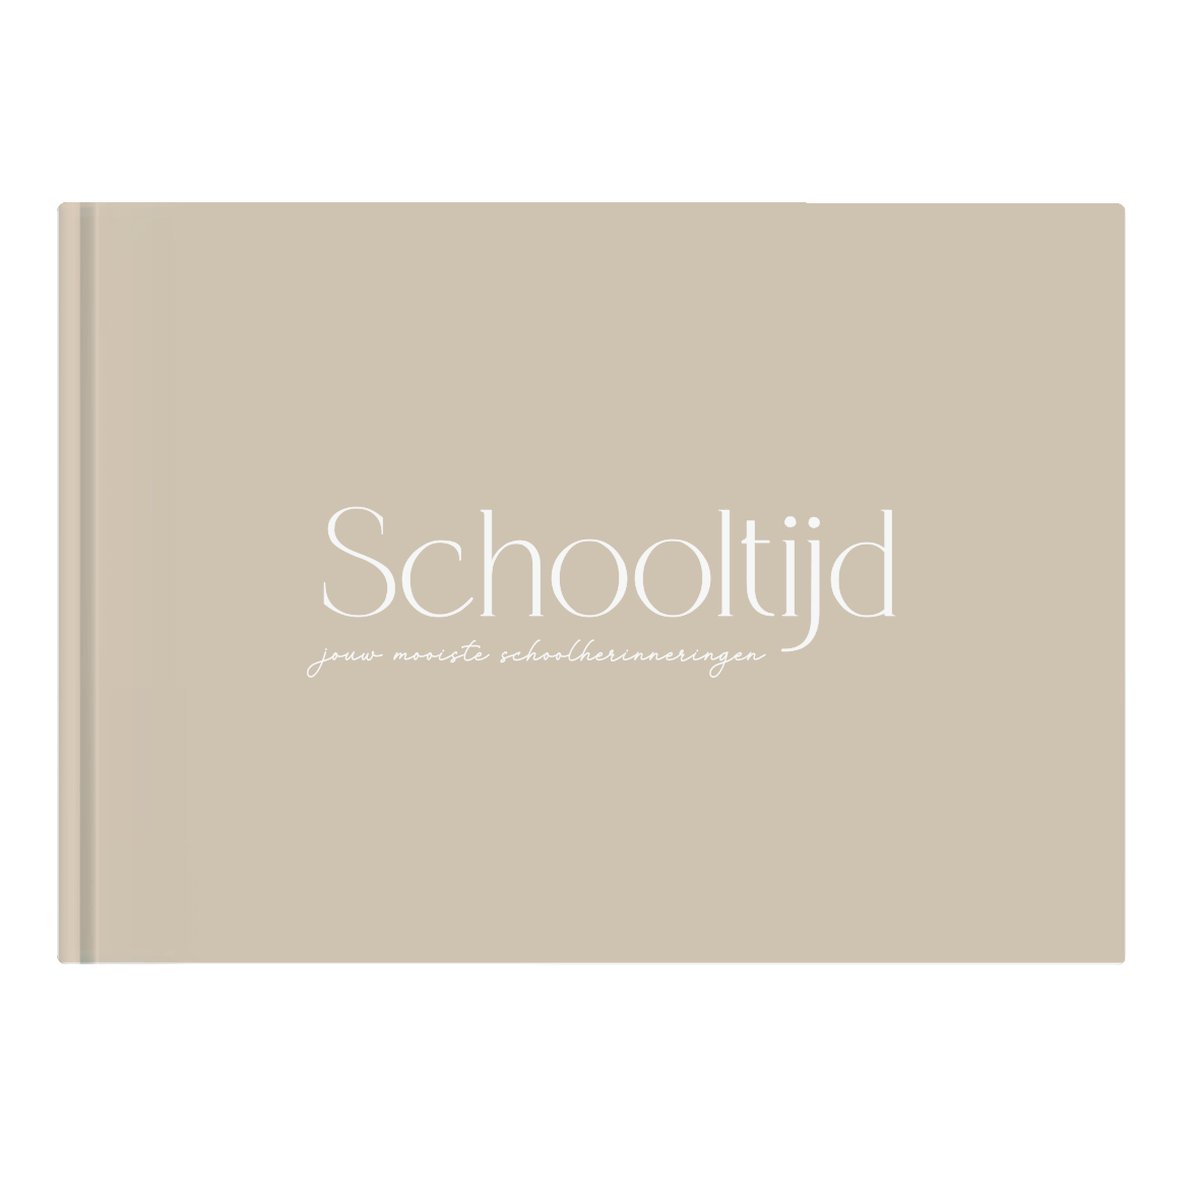 Writemoments - Schoolfotoboek 'Schooltijd' - neutraal - schoolfoto's - schoolfoto album - schoolfoto invulboek - Hardcover